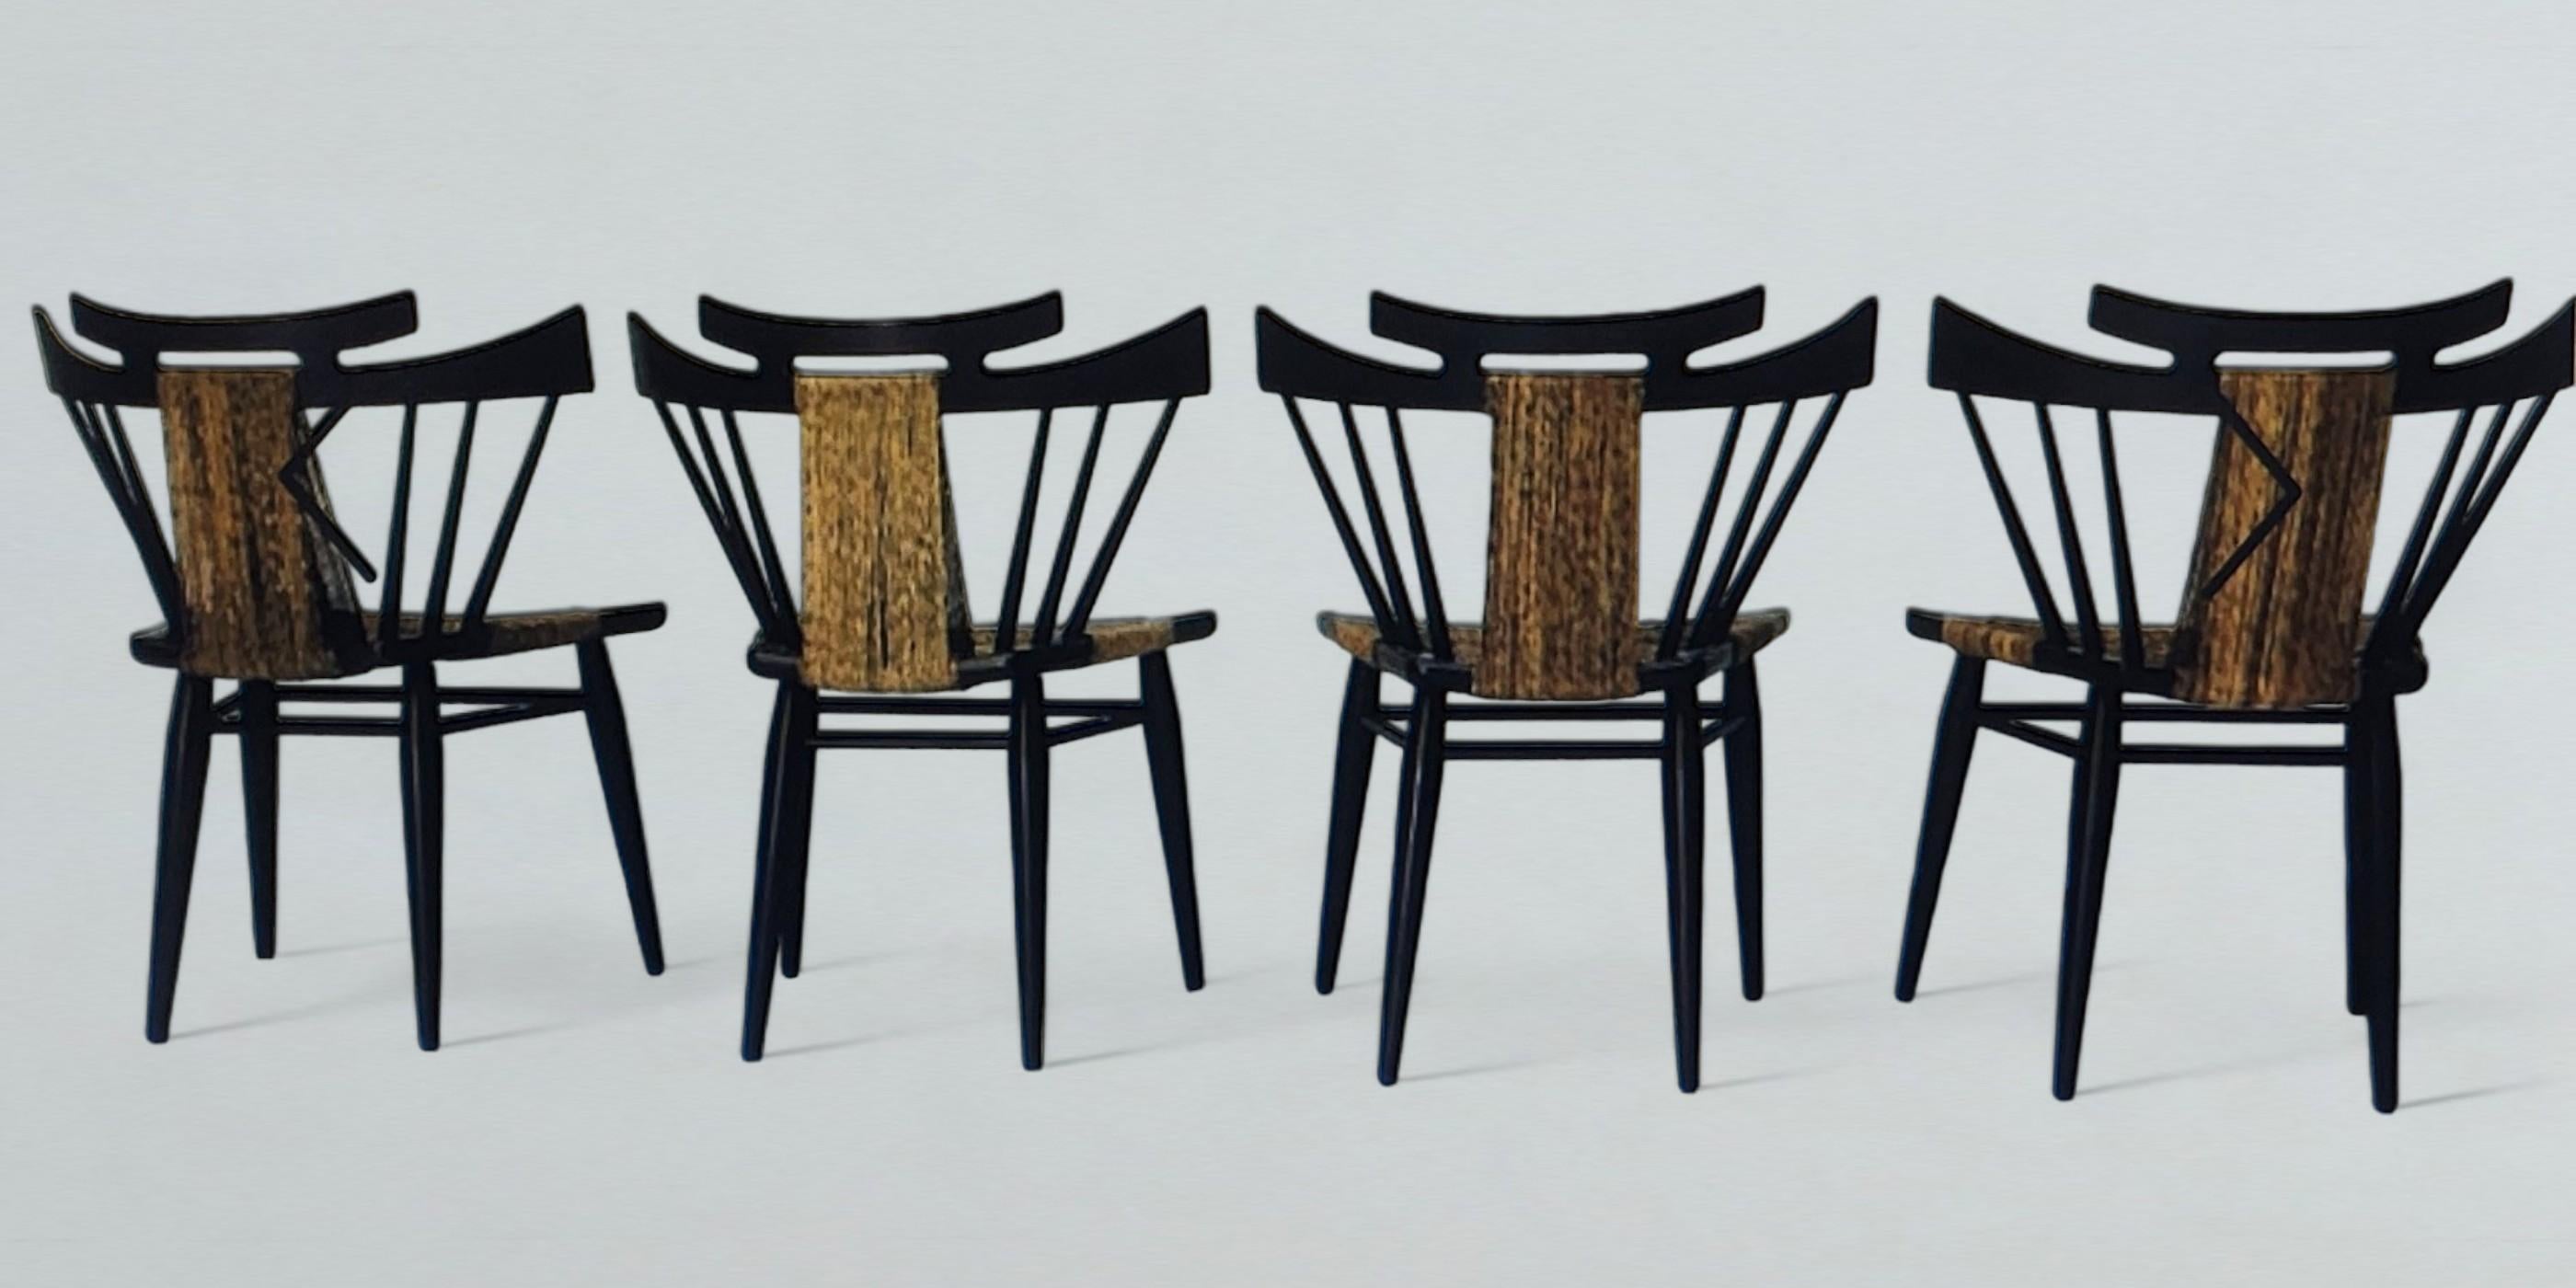 Quatre chaises d'appoint Yucatan vintage d'Edmund Spence pour son fabricant mexicain Industria Mueblera, vers 1958. Les chaises à dossier en fuseau à cadre en acajou massif, avec leurs sièges en jonc de mer tissé d'origine et leur bande de jonc de